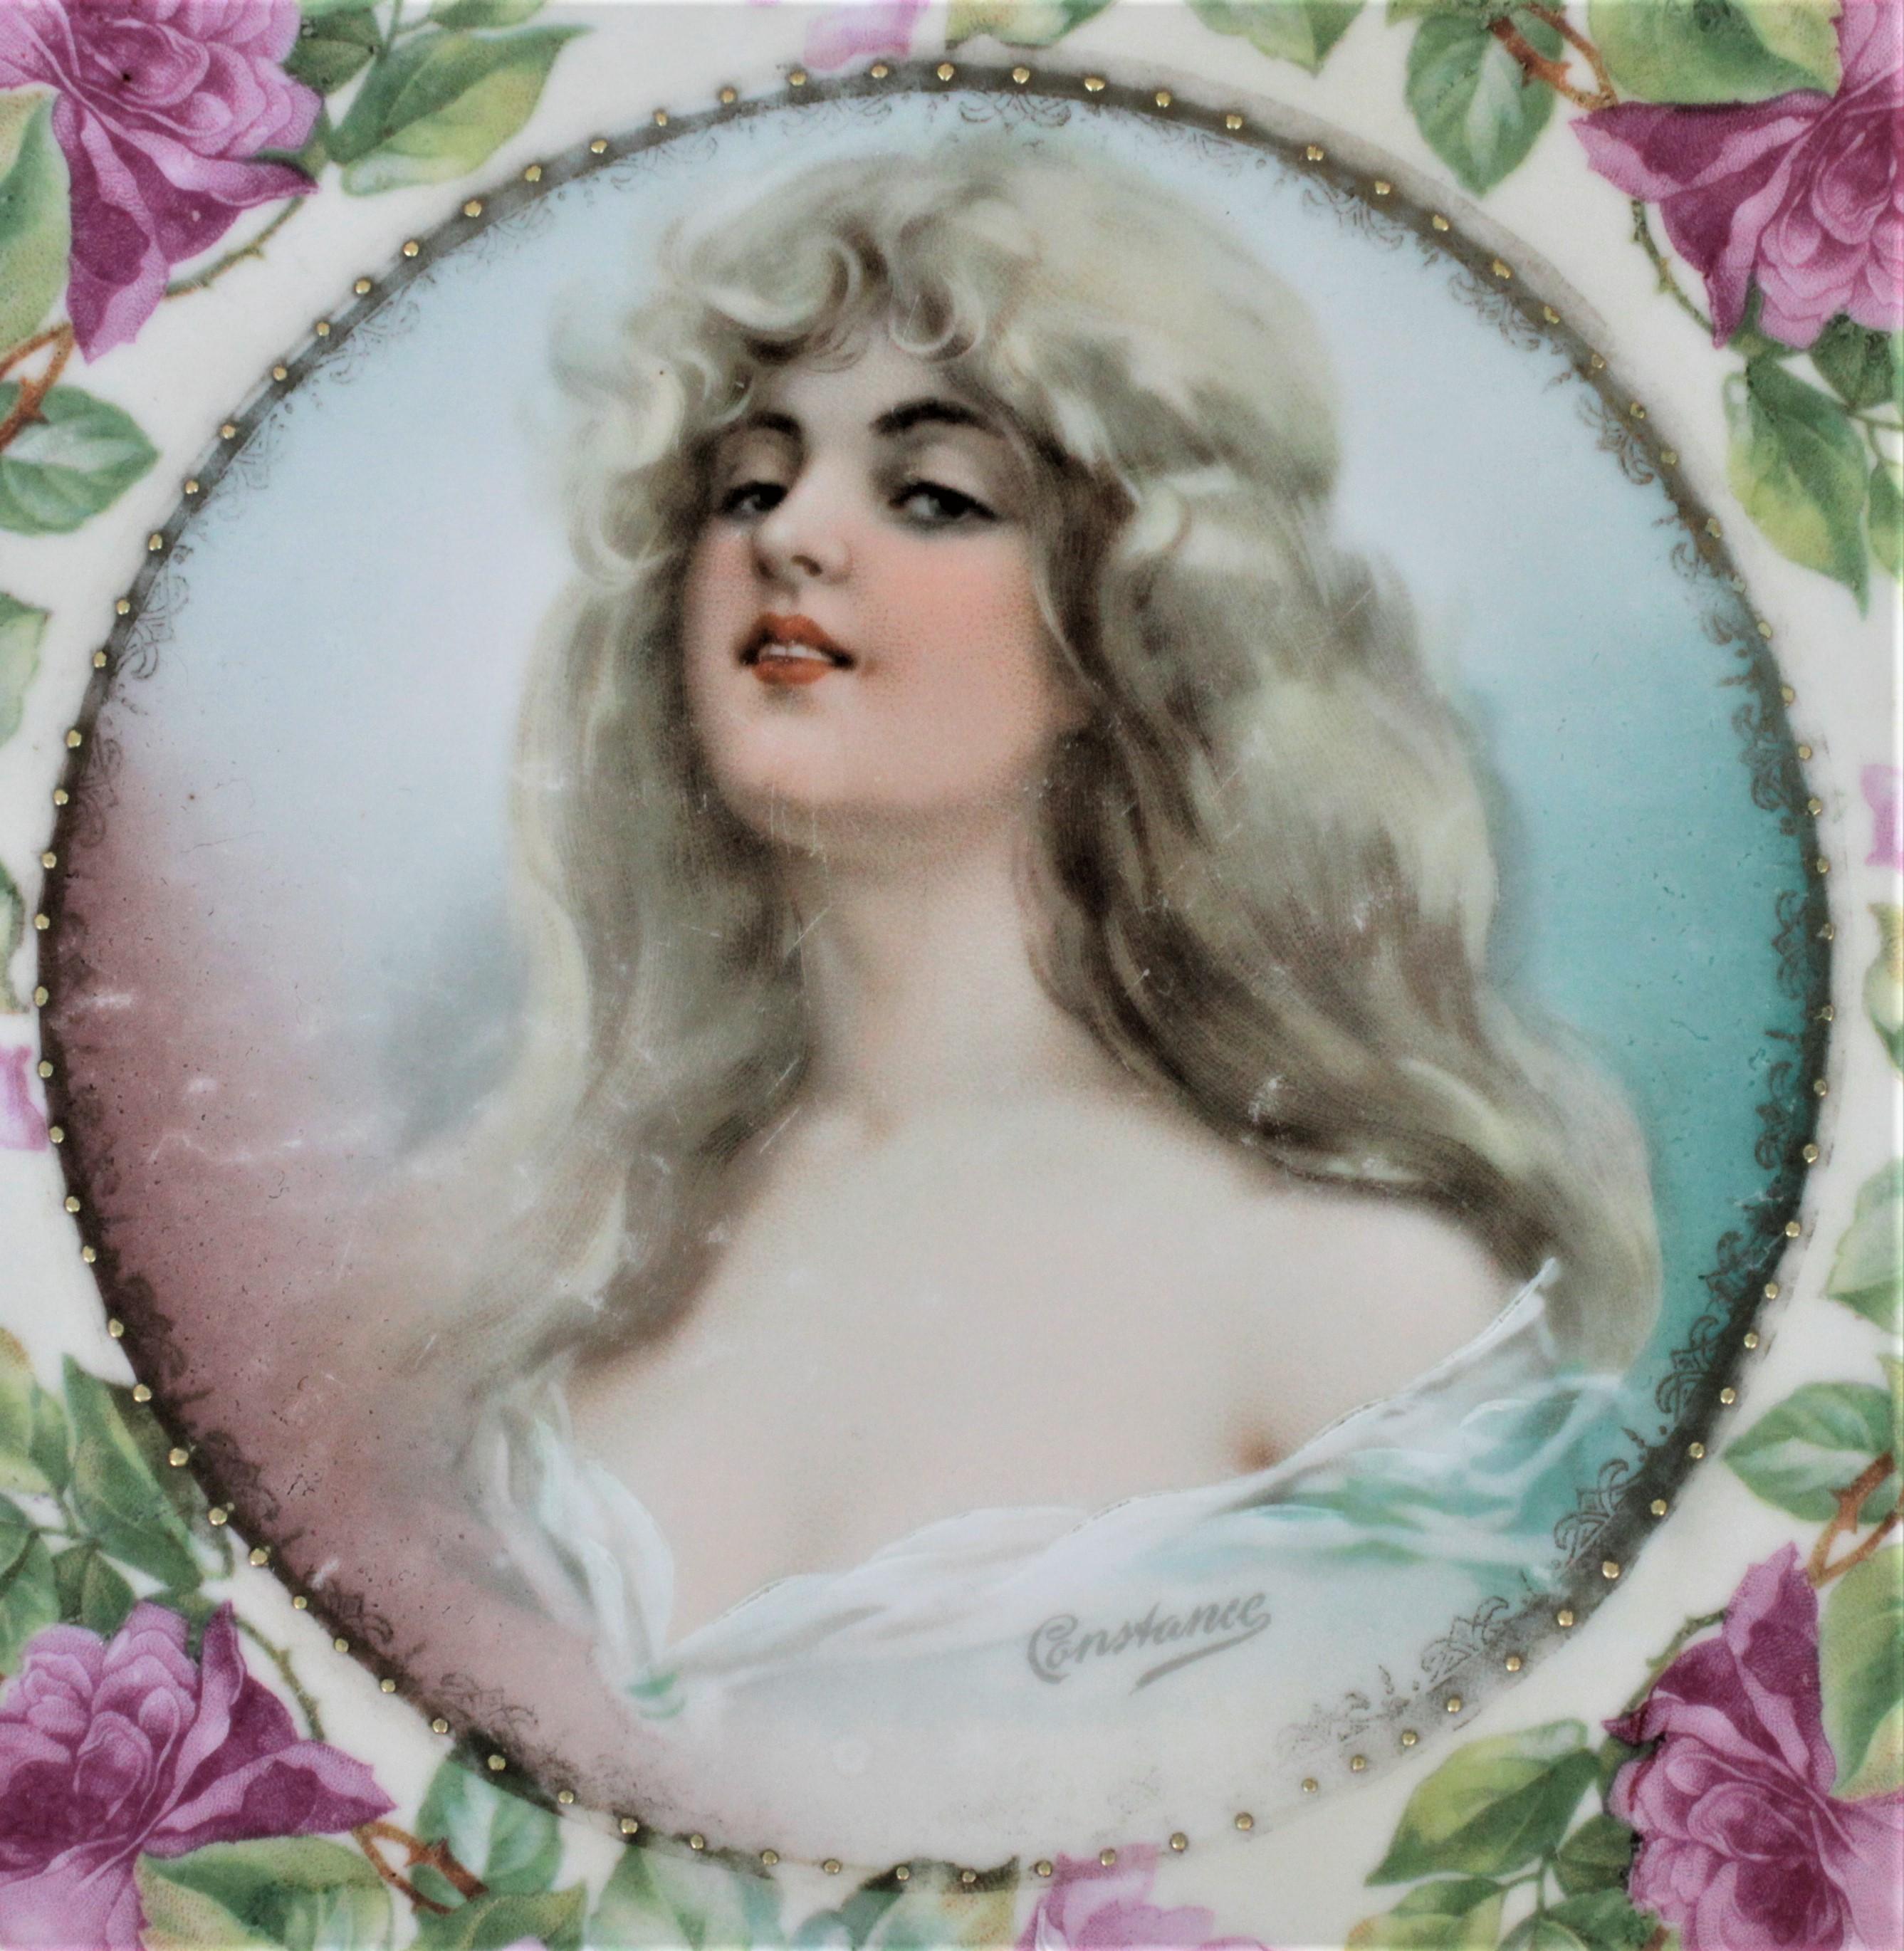 Cette assiette à portrait antique a été fabriquée par la manufacture de porcelaine MZ Austria vers 1908 dans le style de la fin de l'époque victorienne. La plaque représente une jeune femme blonde dans une pose provocante pour l'époque. Elle est